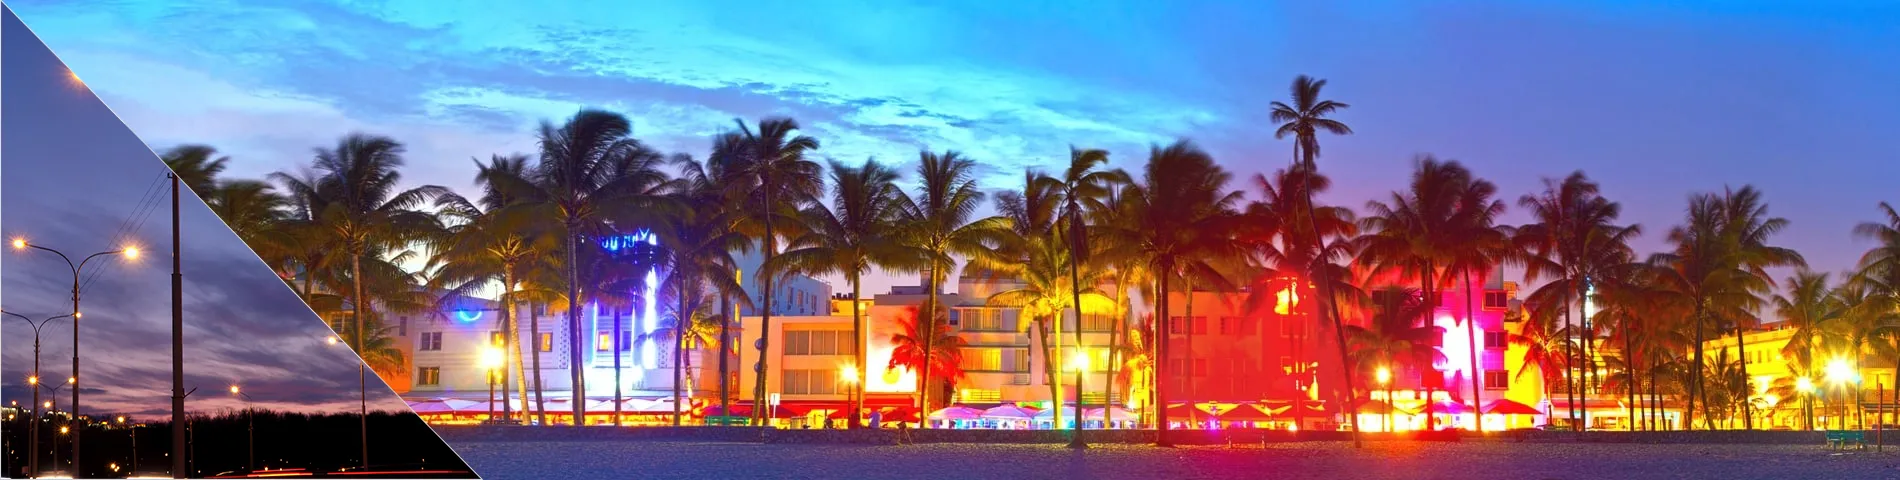 Miami - Evening